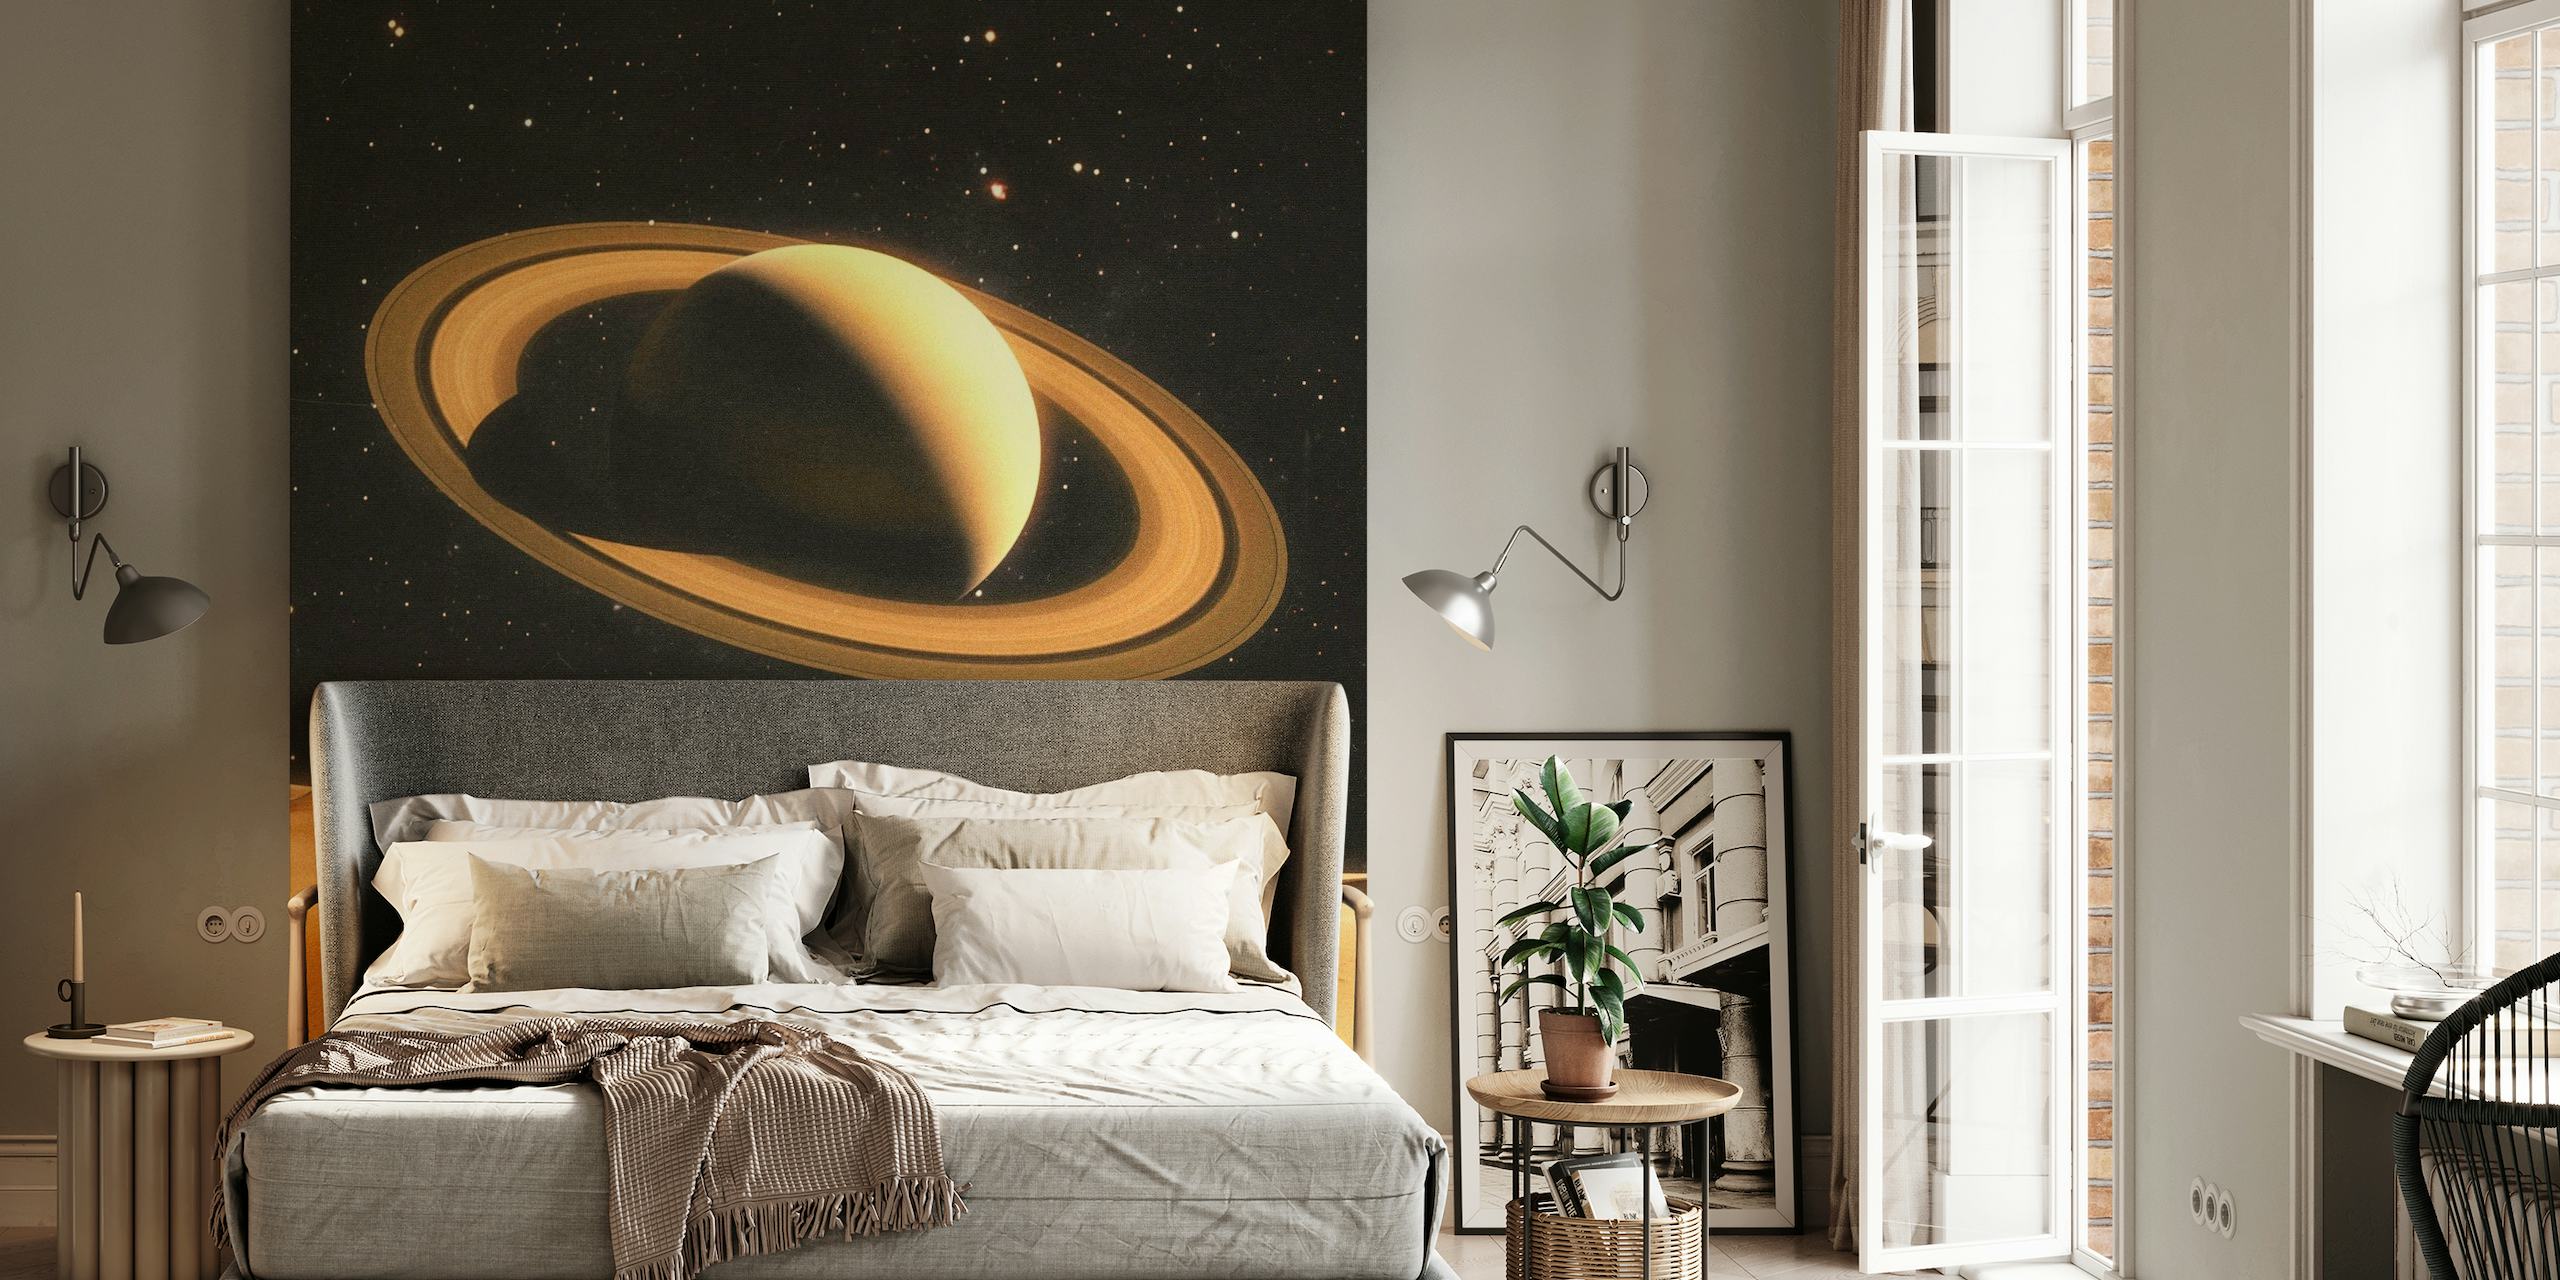 Vægmaleri af to mennesker på en ørkenlignende planet med Saturn i baggrunden